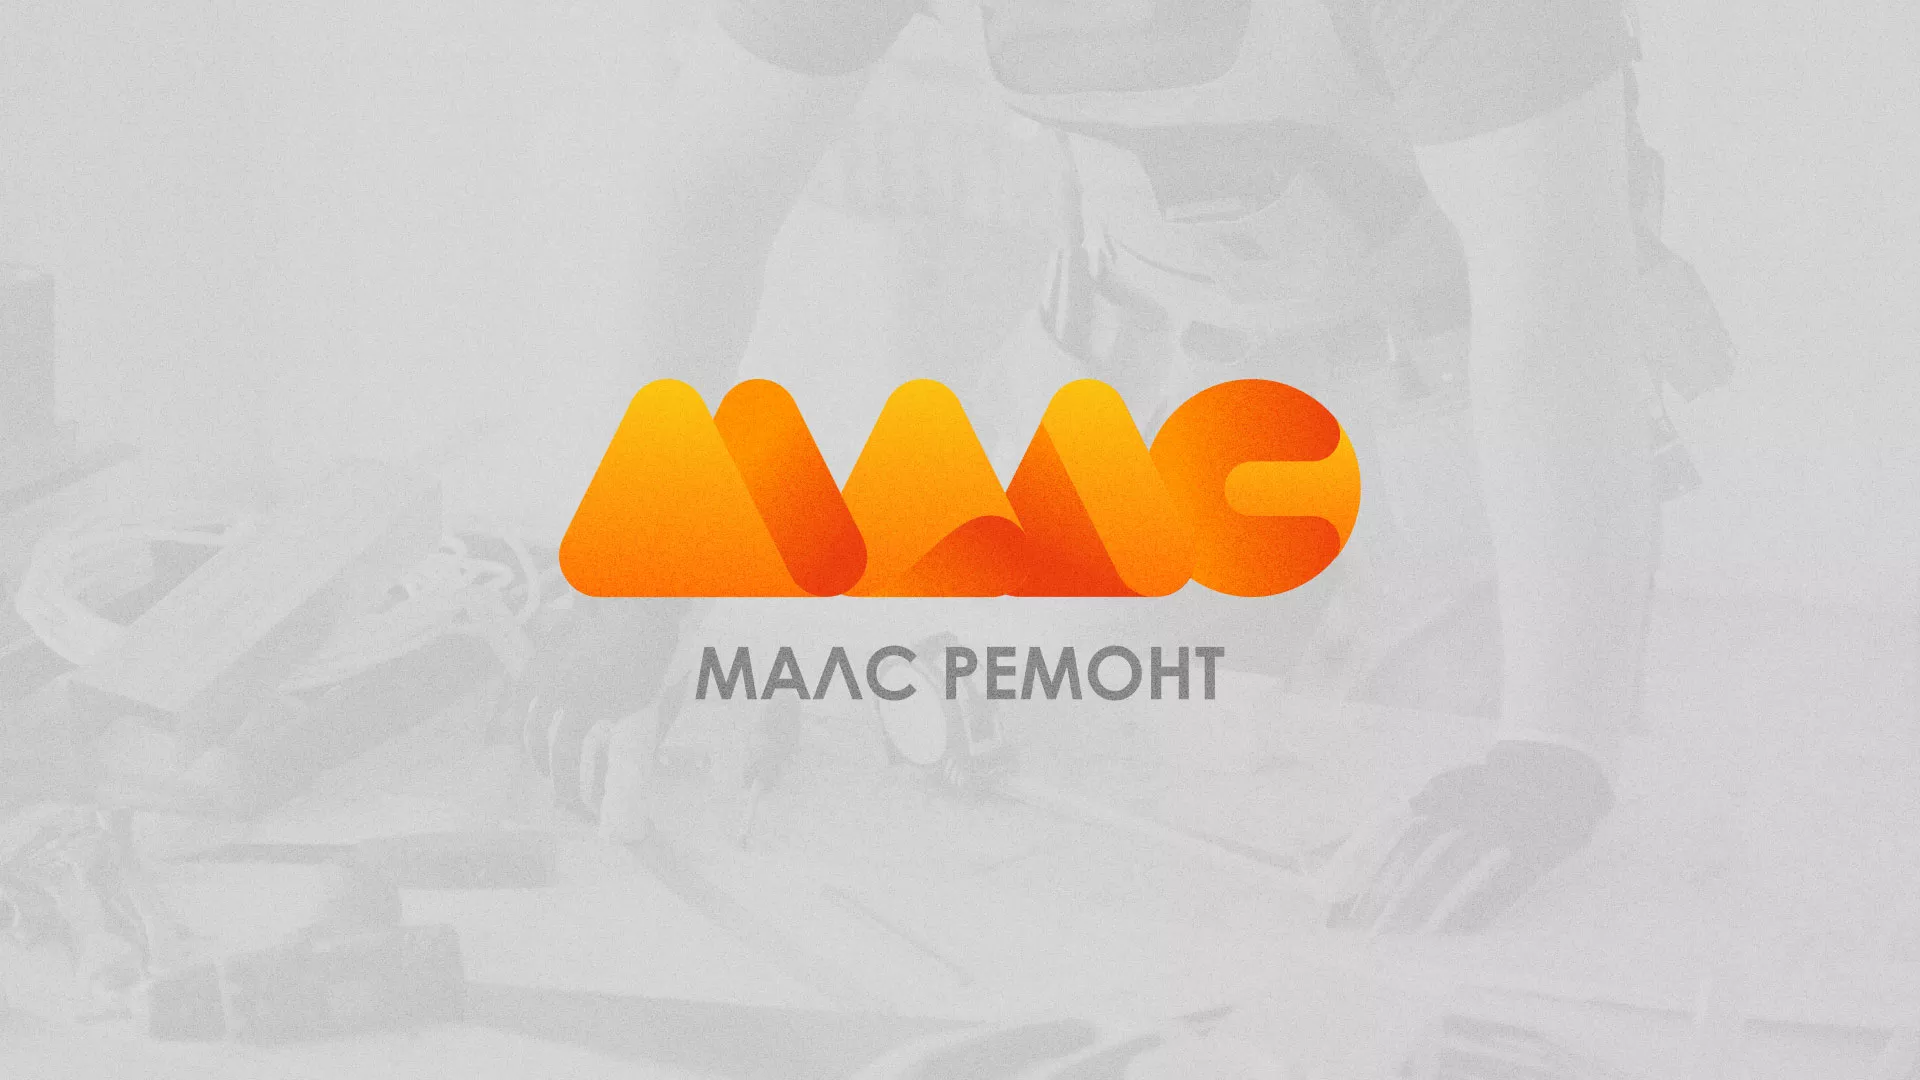 Создание логотипа для компании «МАЛС РЕМОНТ» в Шлиссельбурге